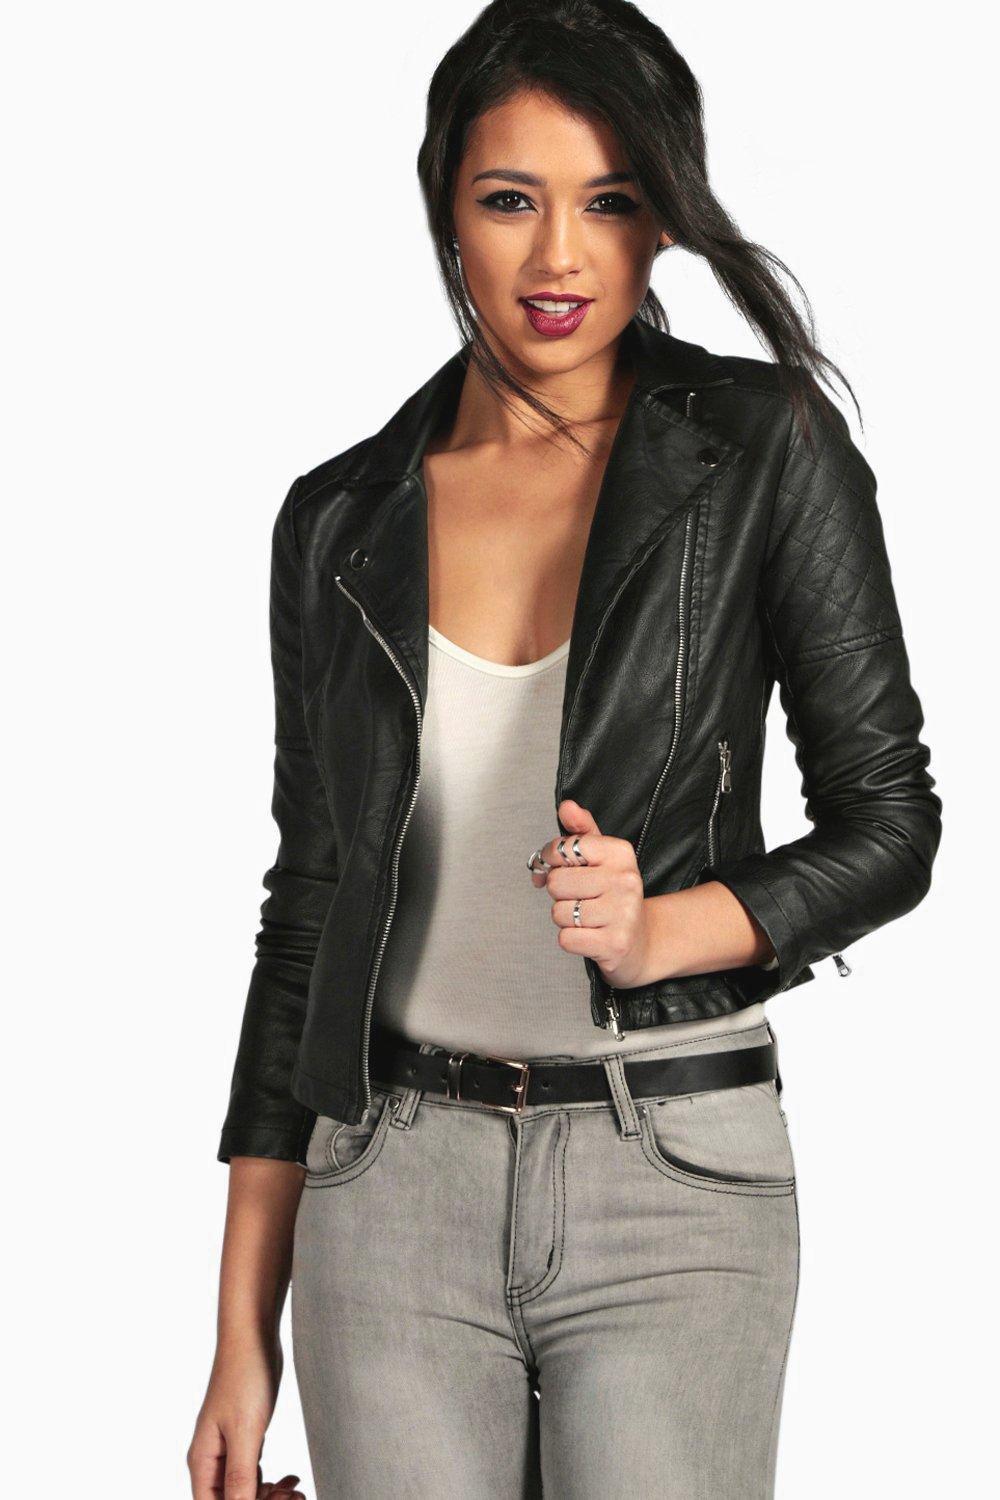 faux leather jacket womens uk